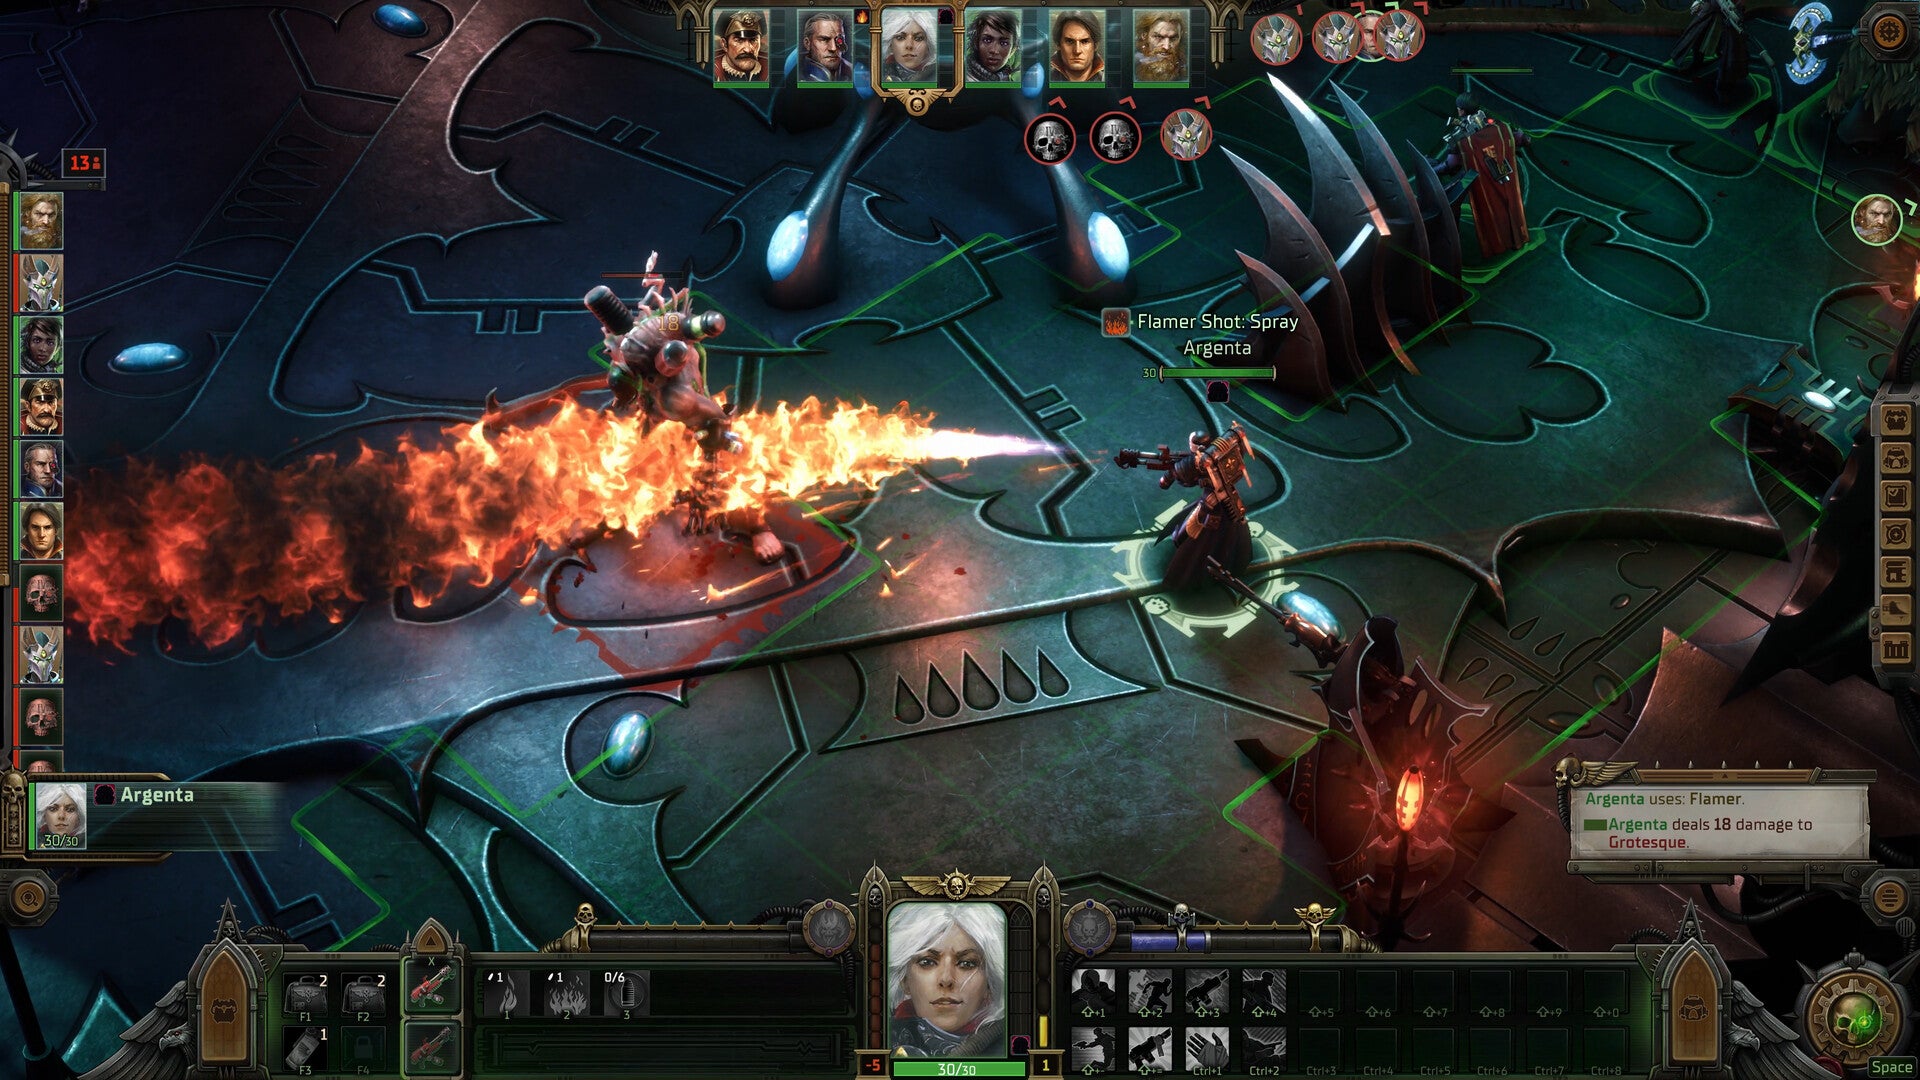 Uno screenshot di Warhammer 40,000 Rogue Trader, che mostra una vista isometrica di un Space Marine che lancia fiamme contro un nemico.